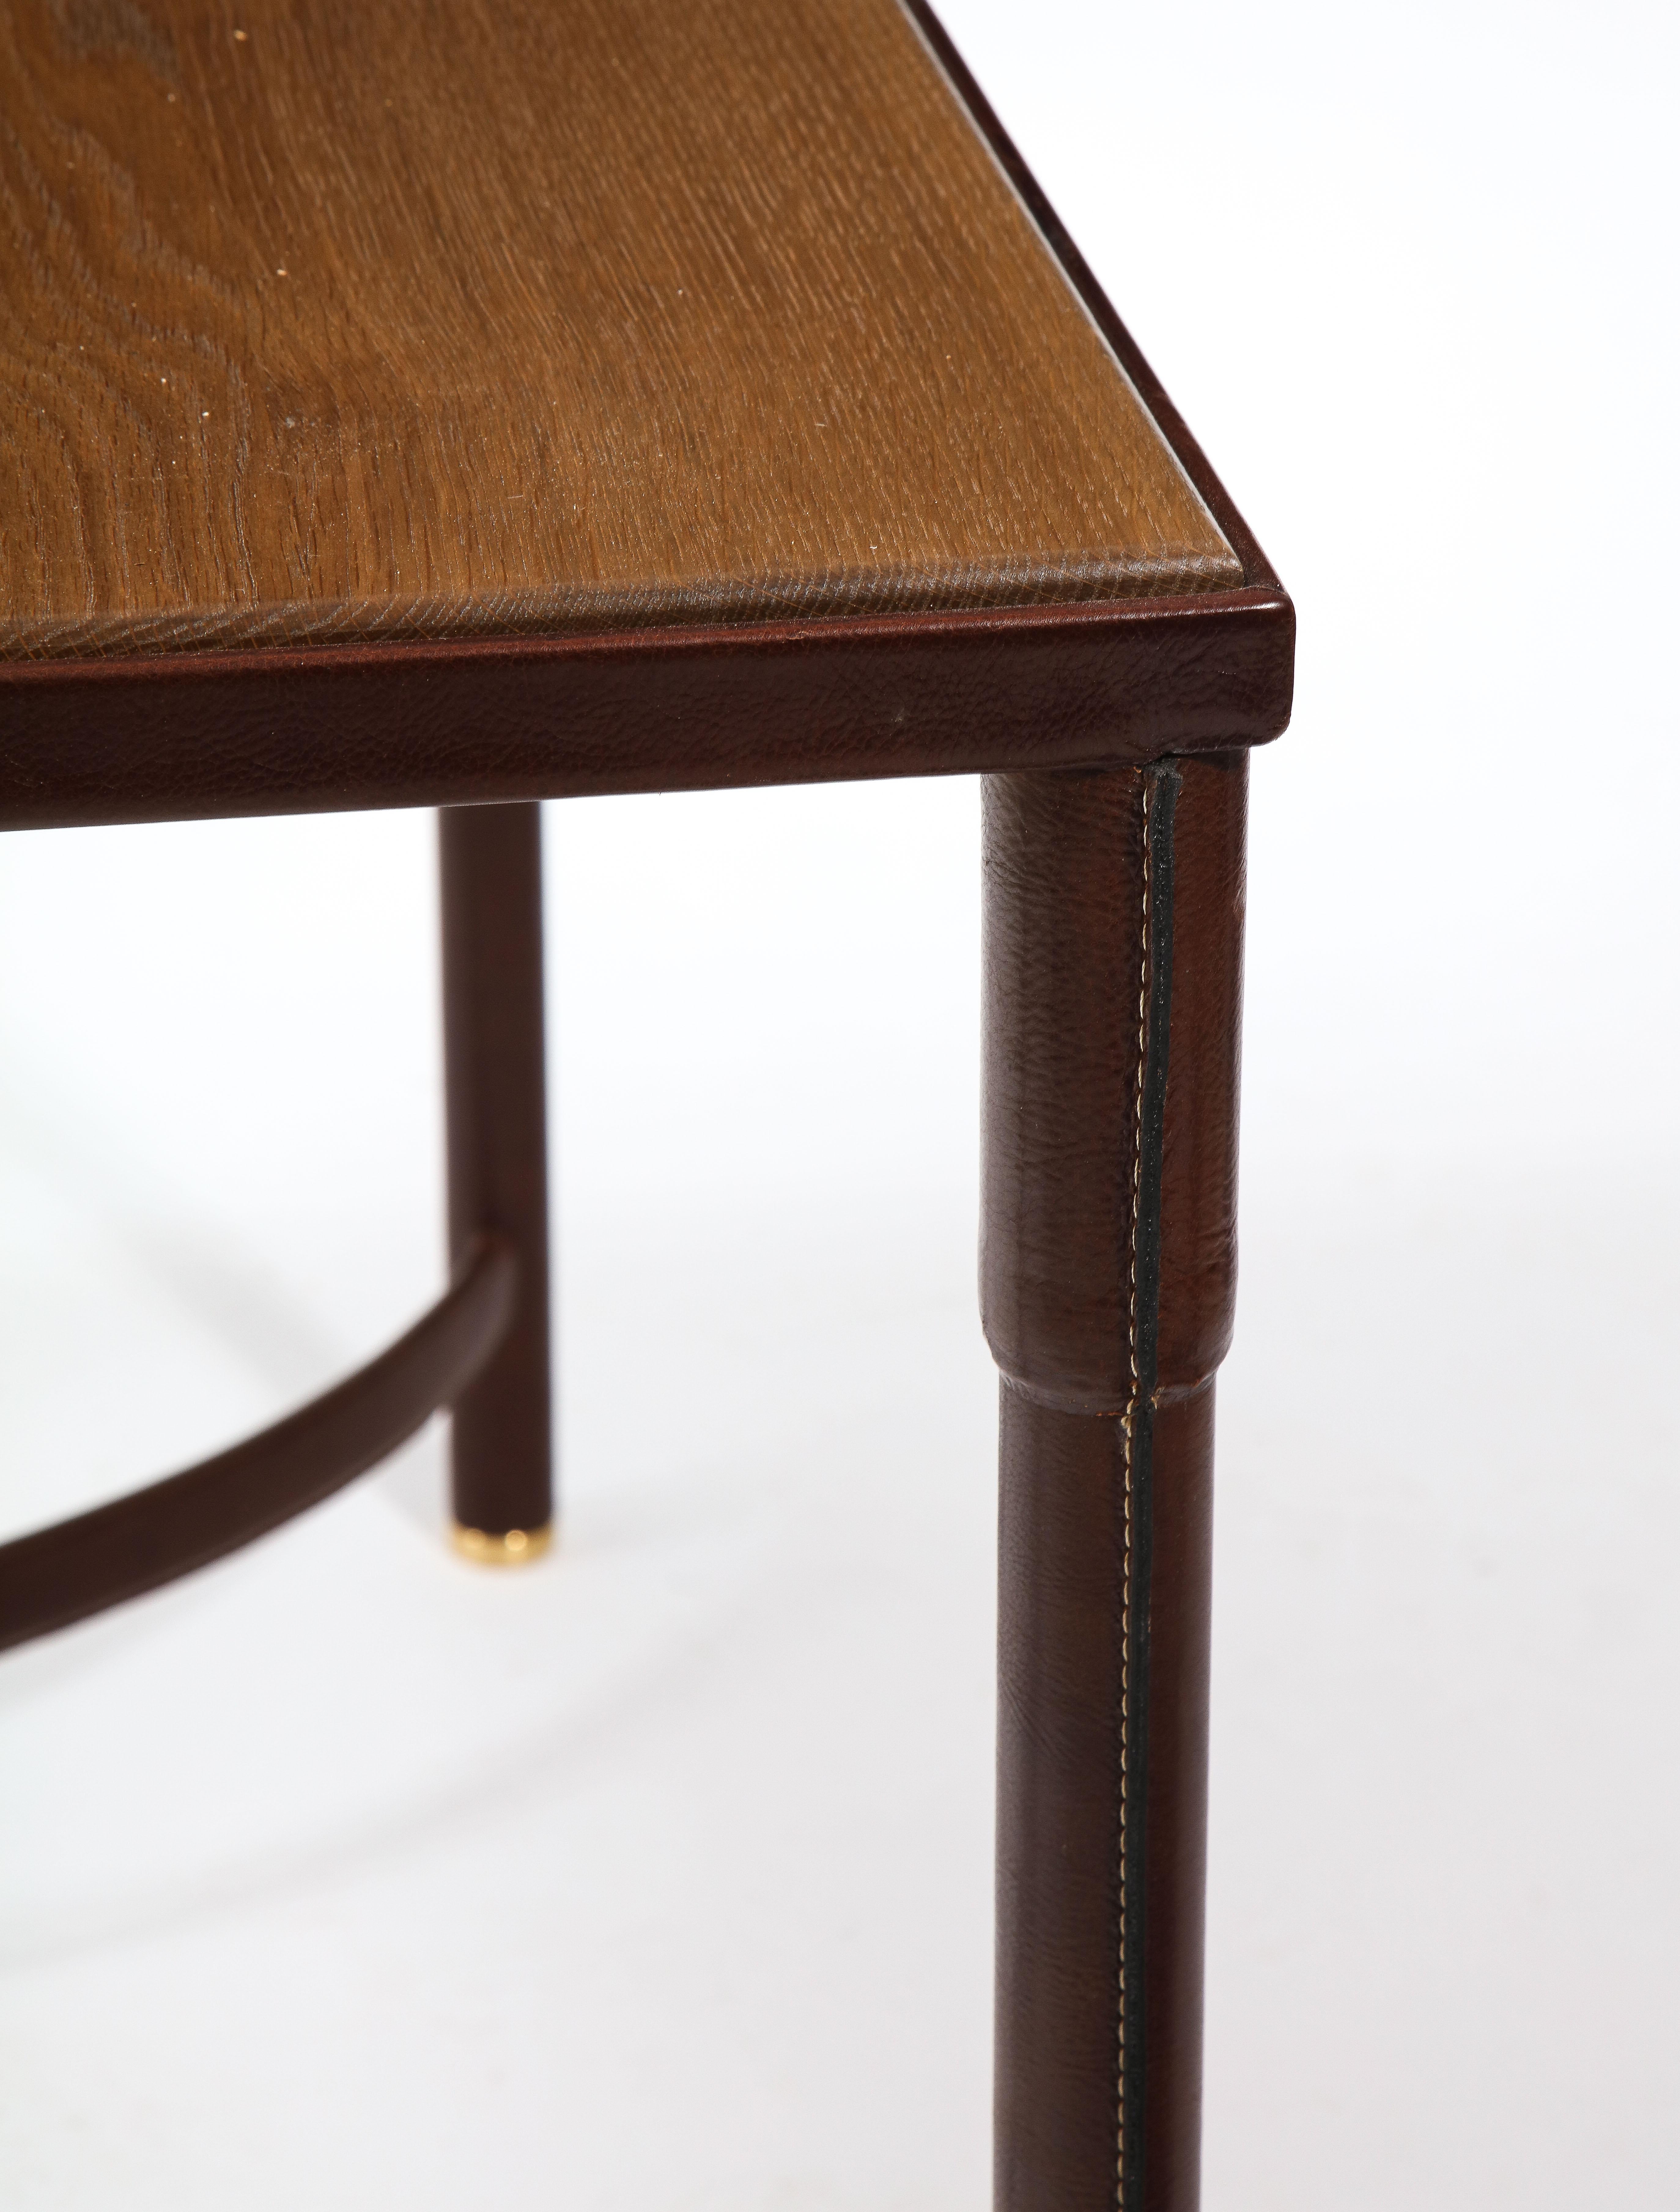 Eleganter Jacques Adnet-Mitteltisch oder -Schreibtisch aus genähtem Leder mit Eichenplatte. Das Leder wurde von einem der führenden Restaurierungsstudios in den USA fachmännisch und originalgetreu restauriert. Er hat eine doppelseitige U-förmige